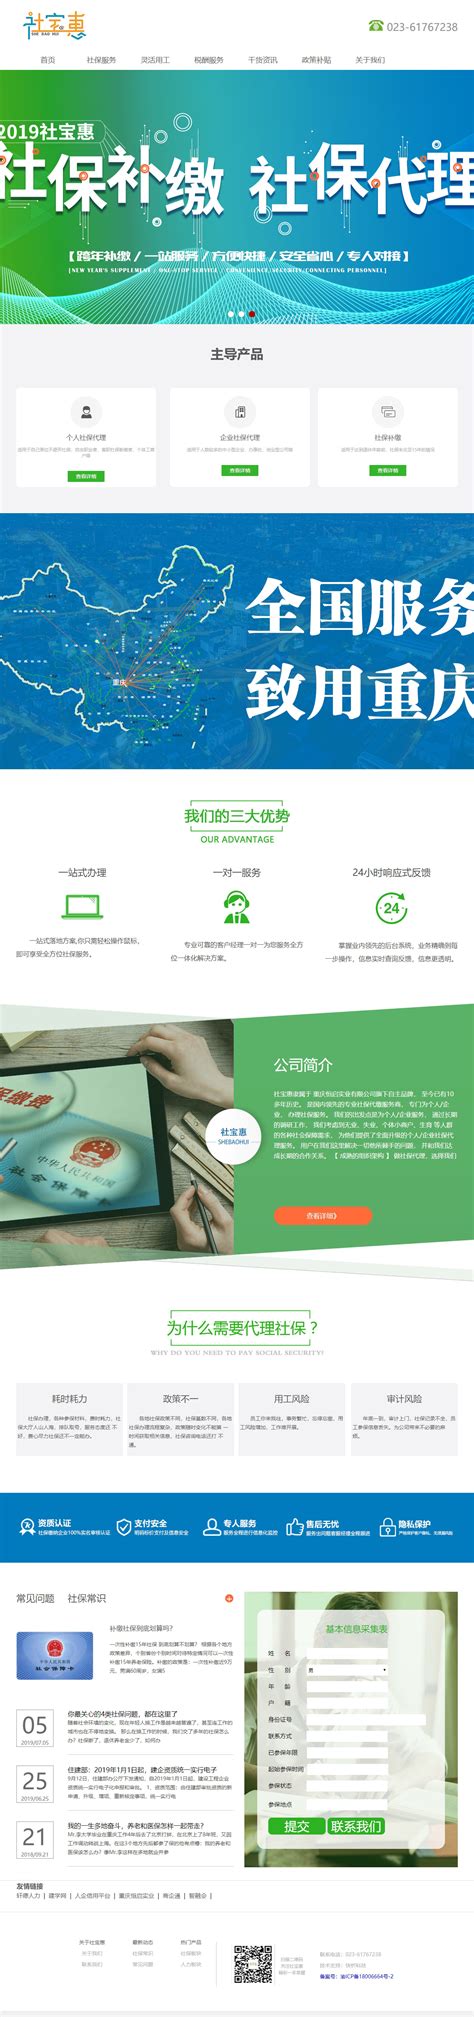 重庆网络营销案例